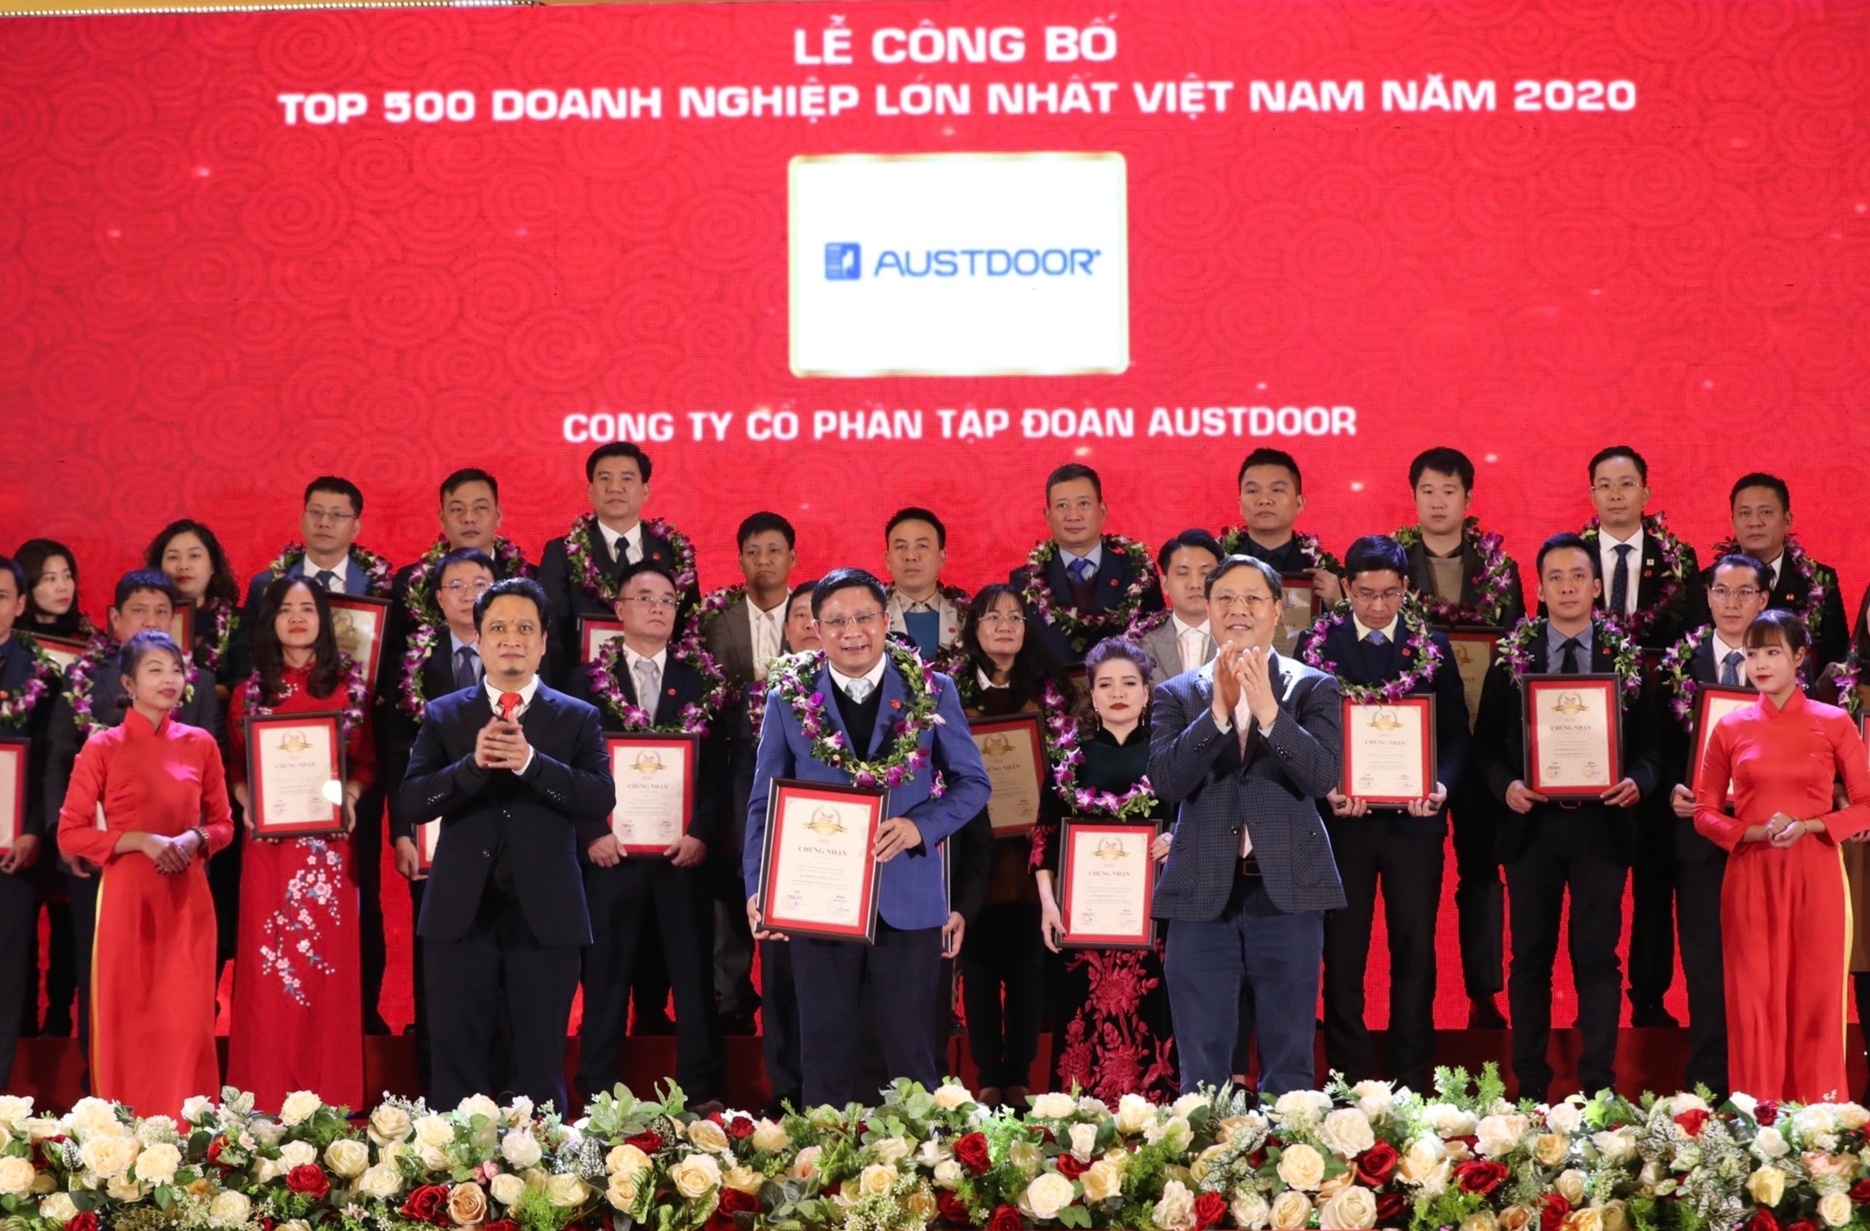 Tập đoàn Austdoor xếp hạng Top 500 Doanh nghiệp lớn nhất Việt Nam